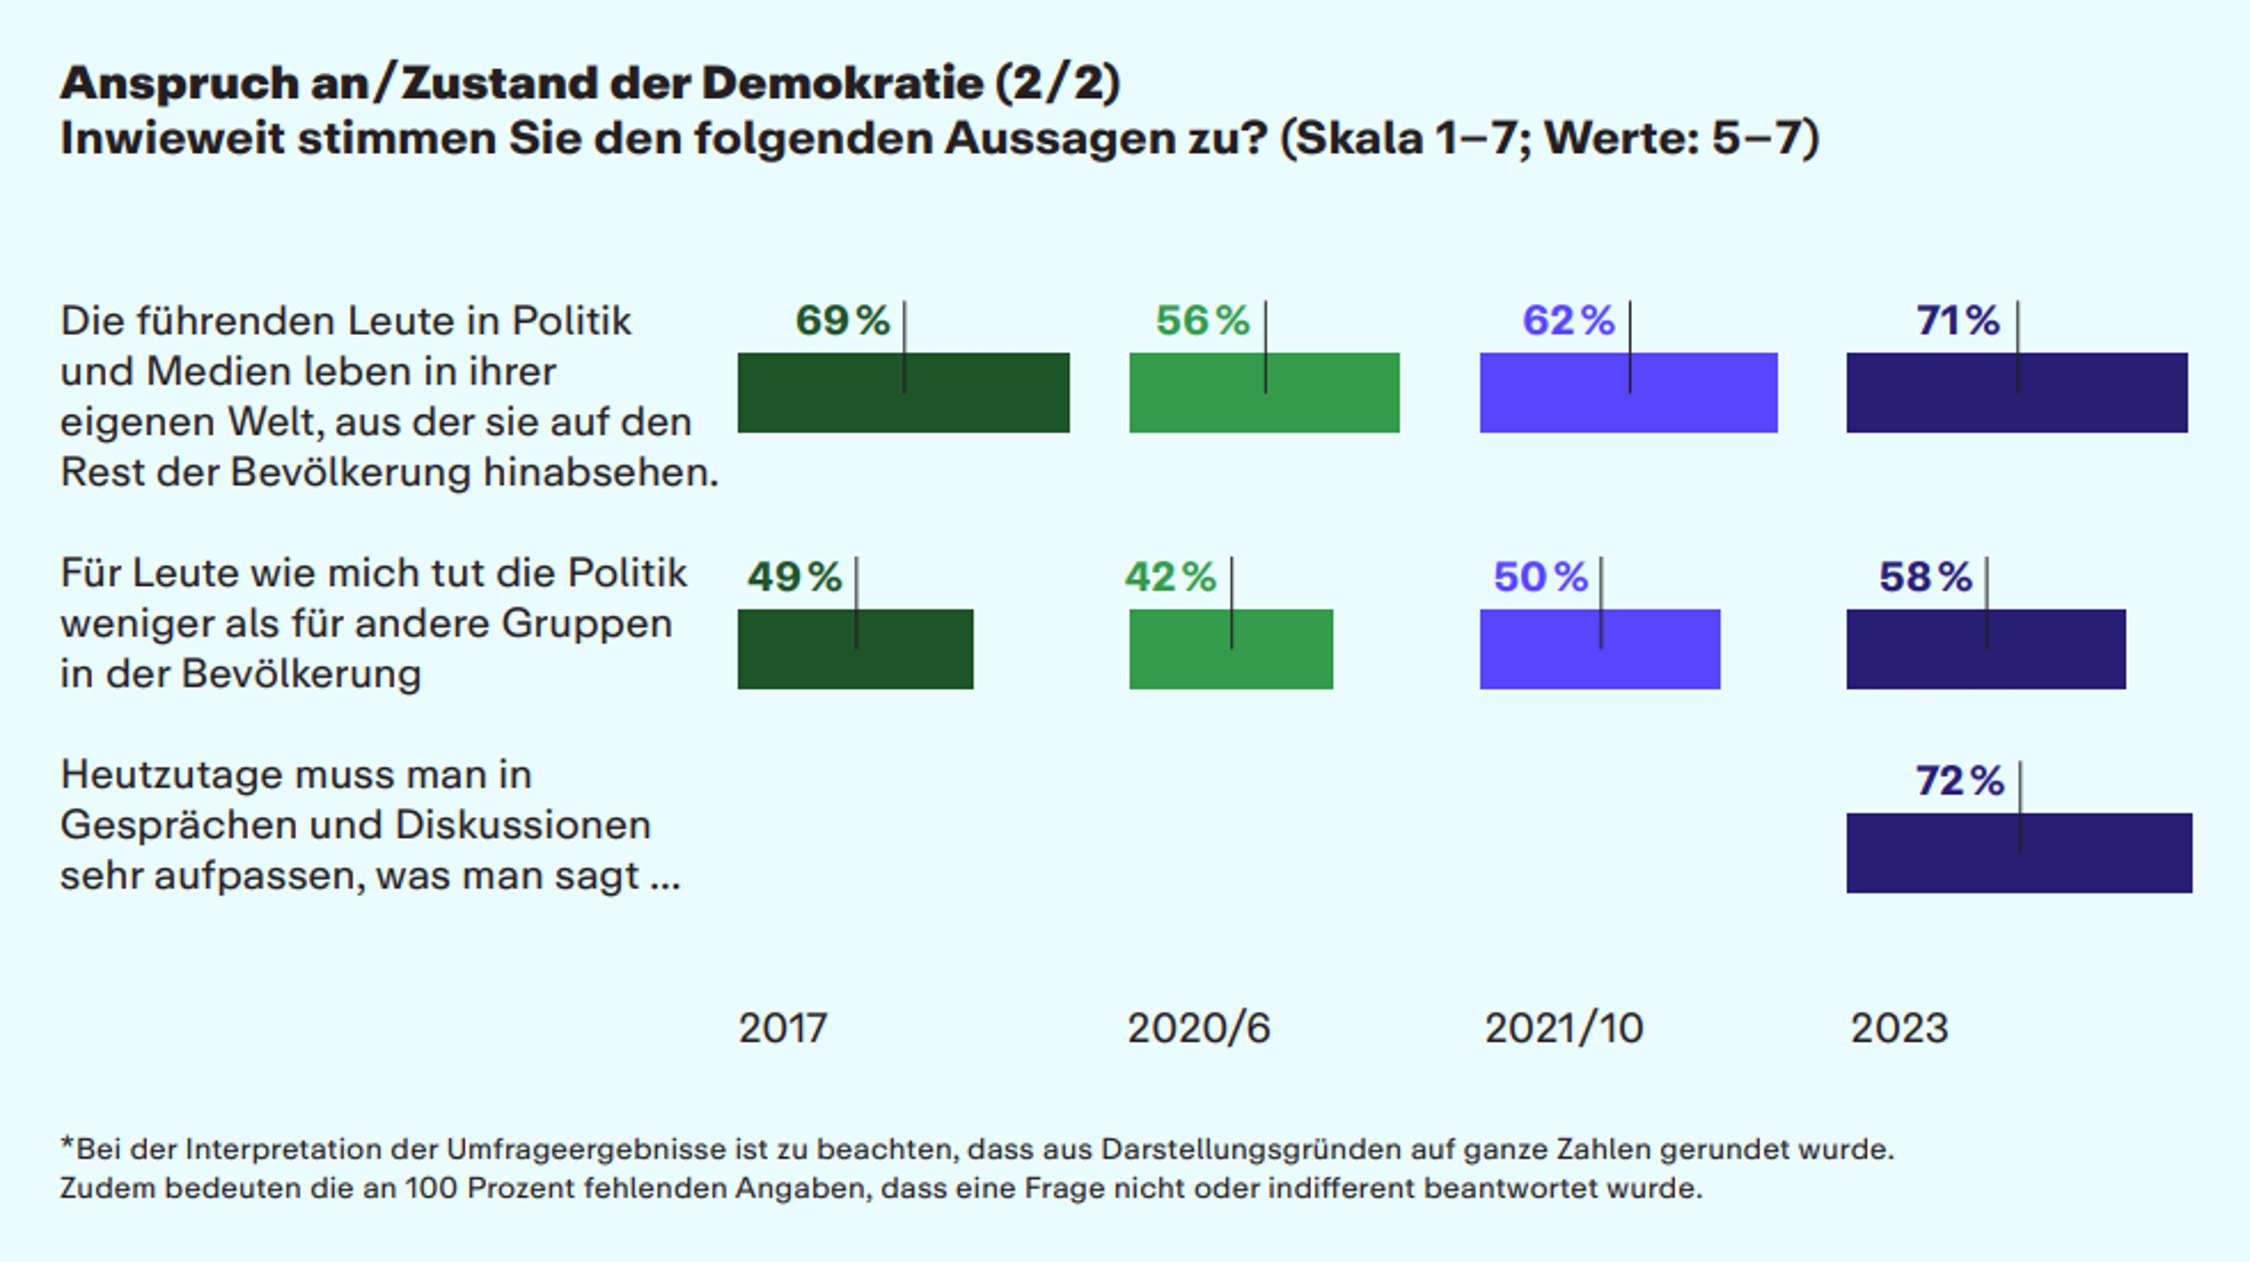 Was die Bundesbürger über führende Persönlichkeiten, andere Gruppen und Gesprächskultur so denken ... Grafik: Körber-Stiftung